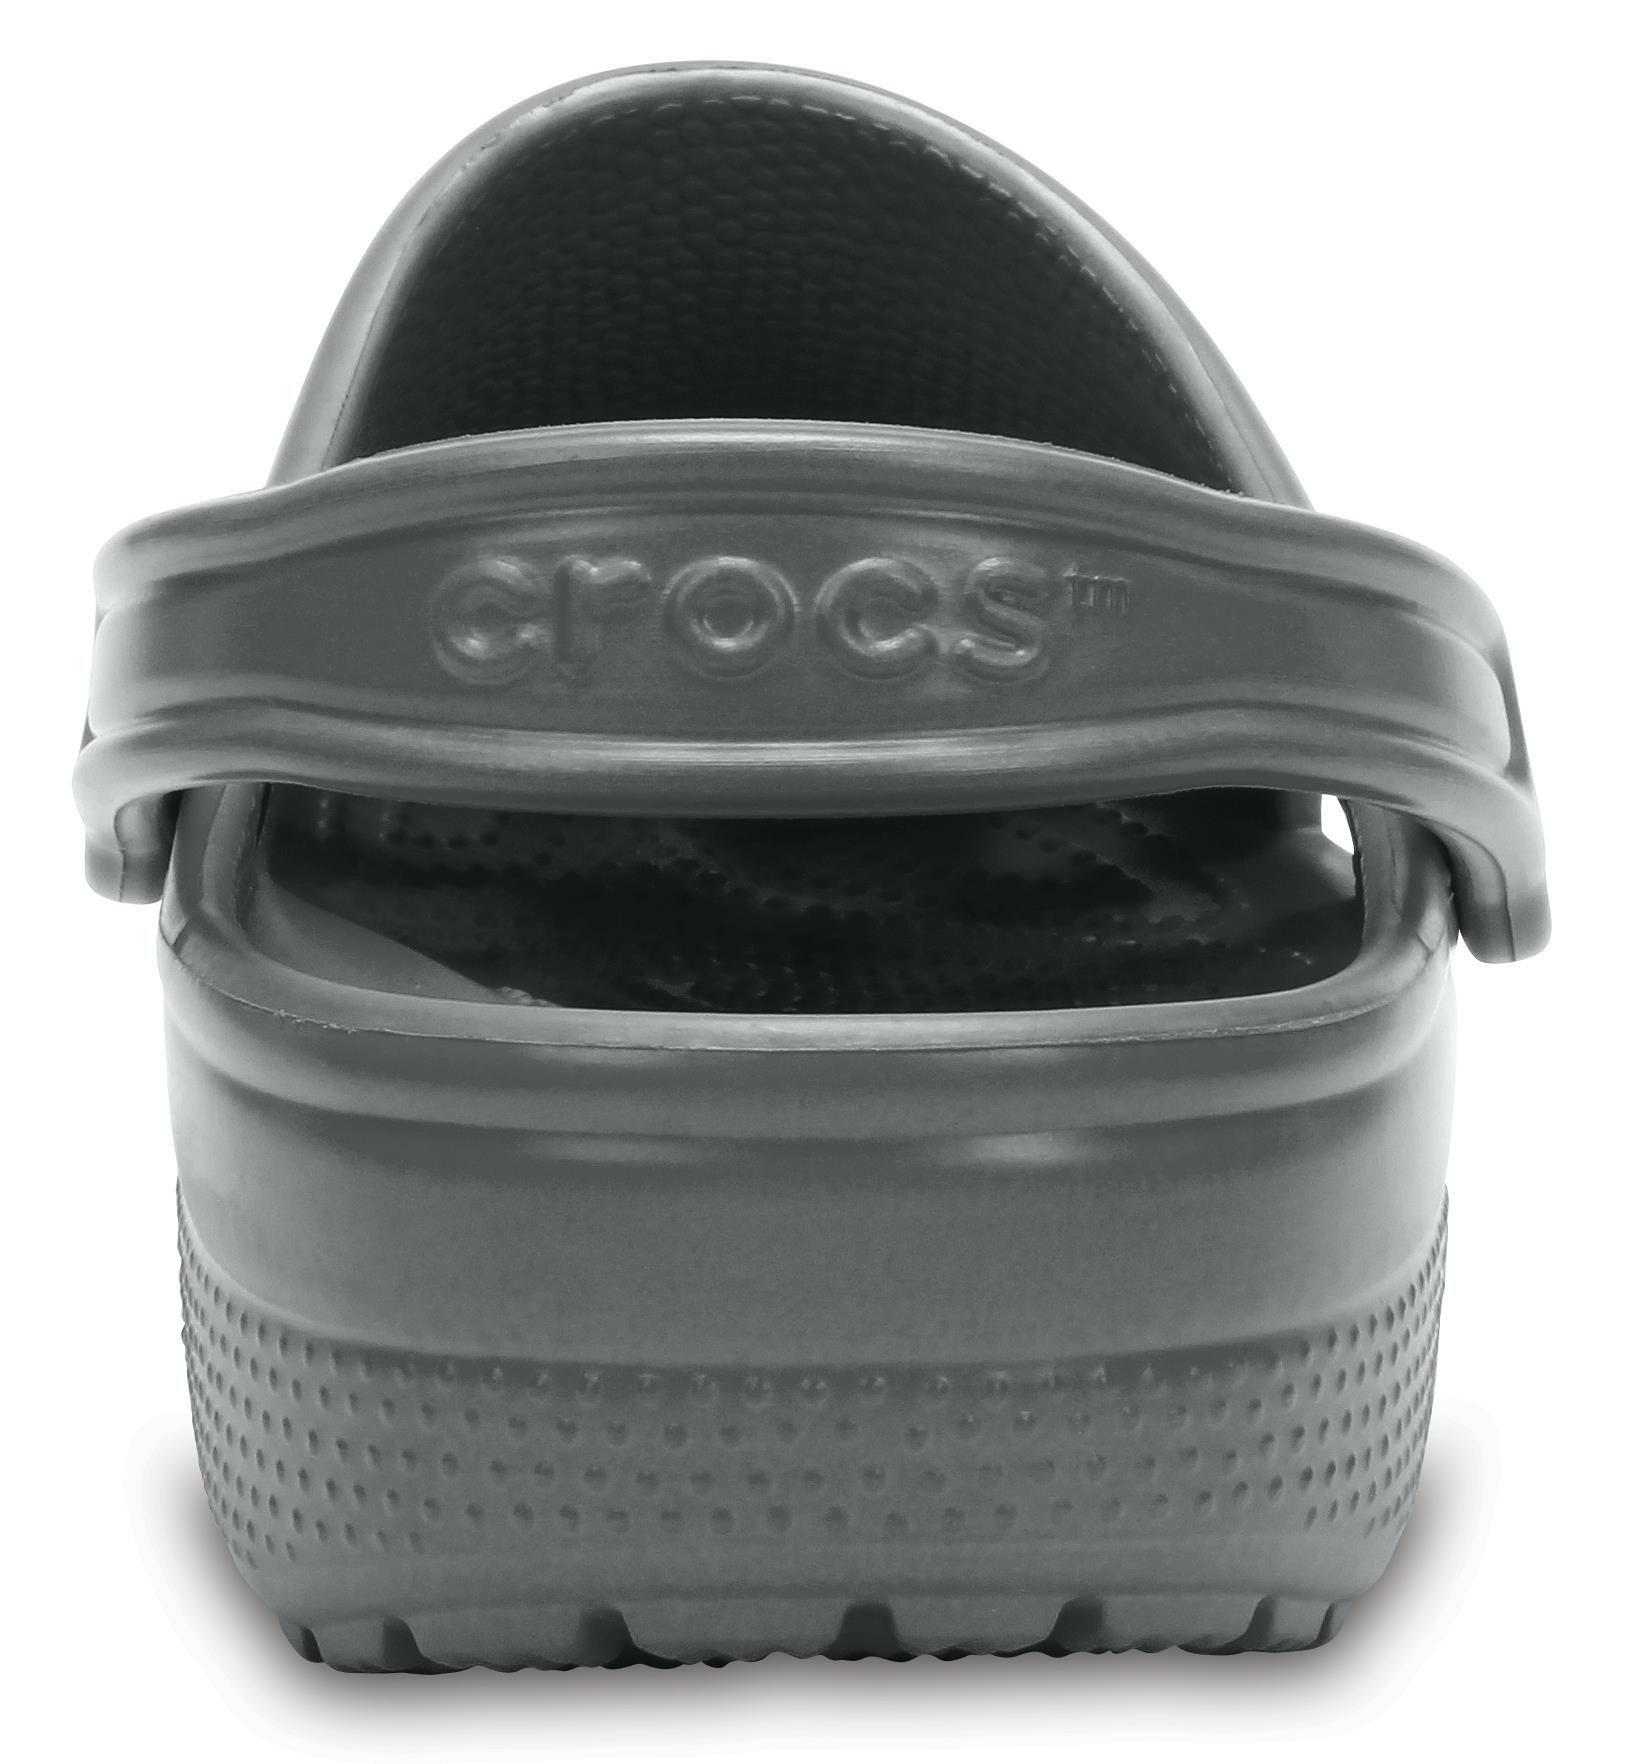  Crocs Classic Sandalet Cr0316-0Da